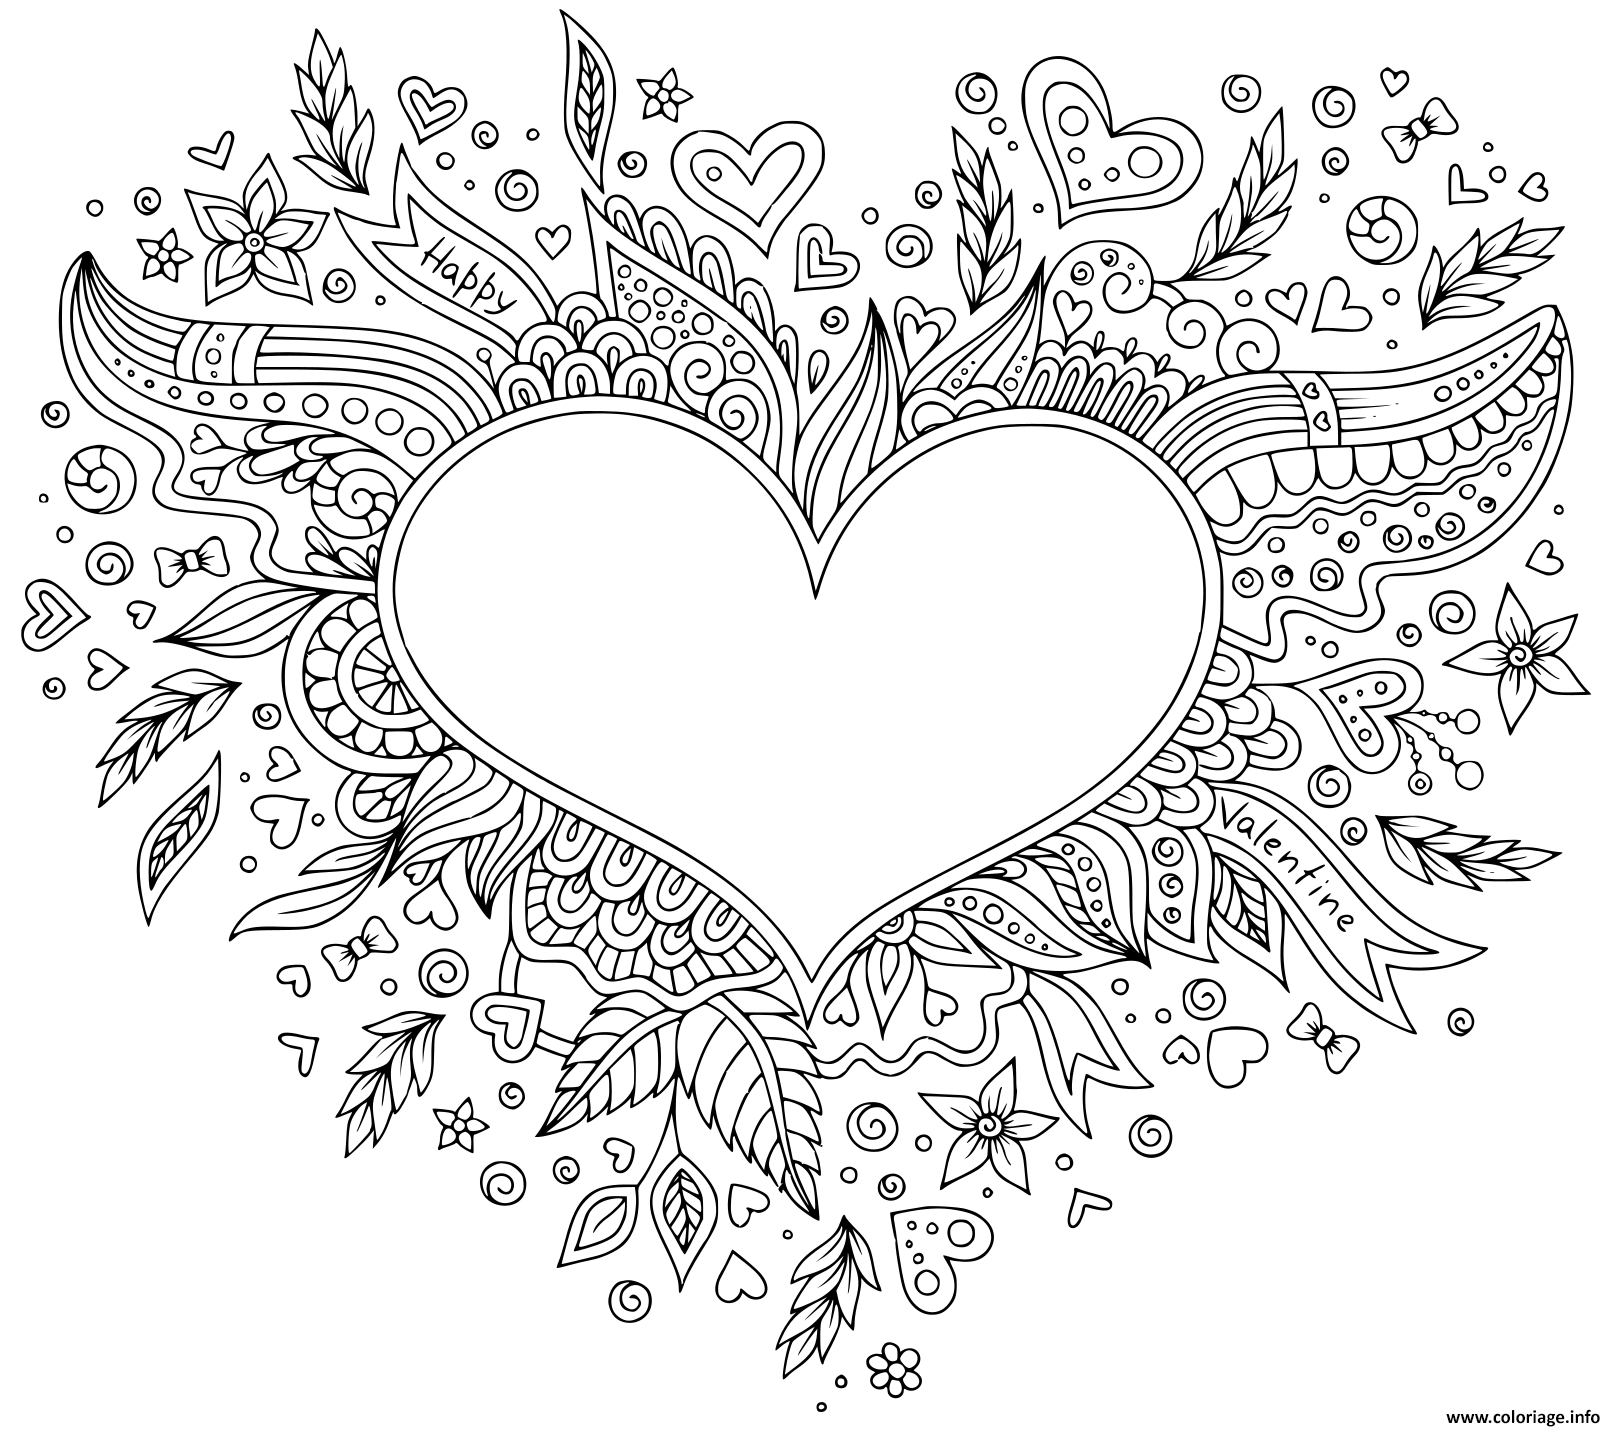 coloriage joyeuse st valentin coeur avec des motifs dessin a imprimer peter marche sur l&#x00027;eau lds signification